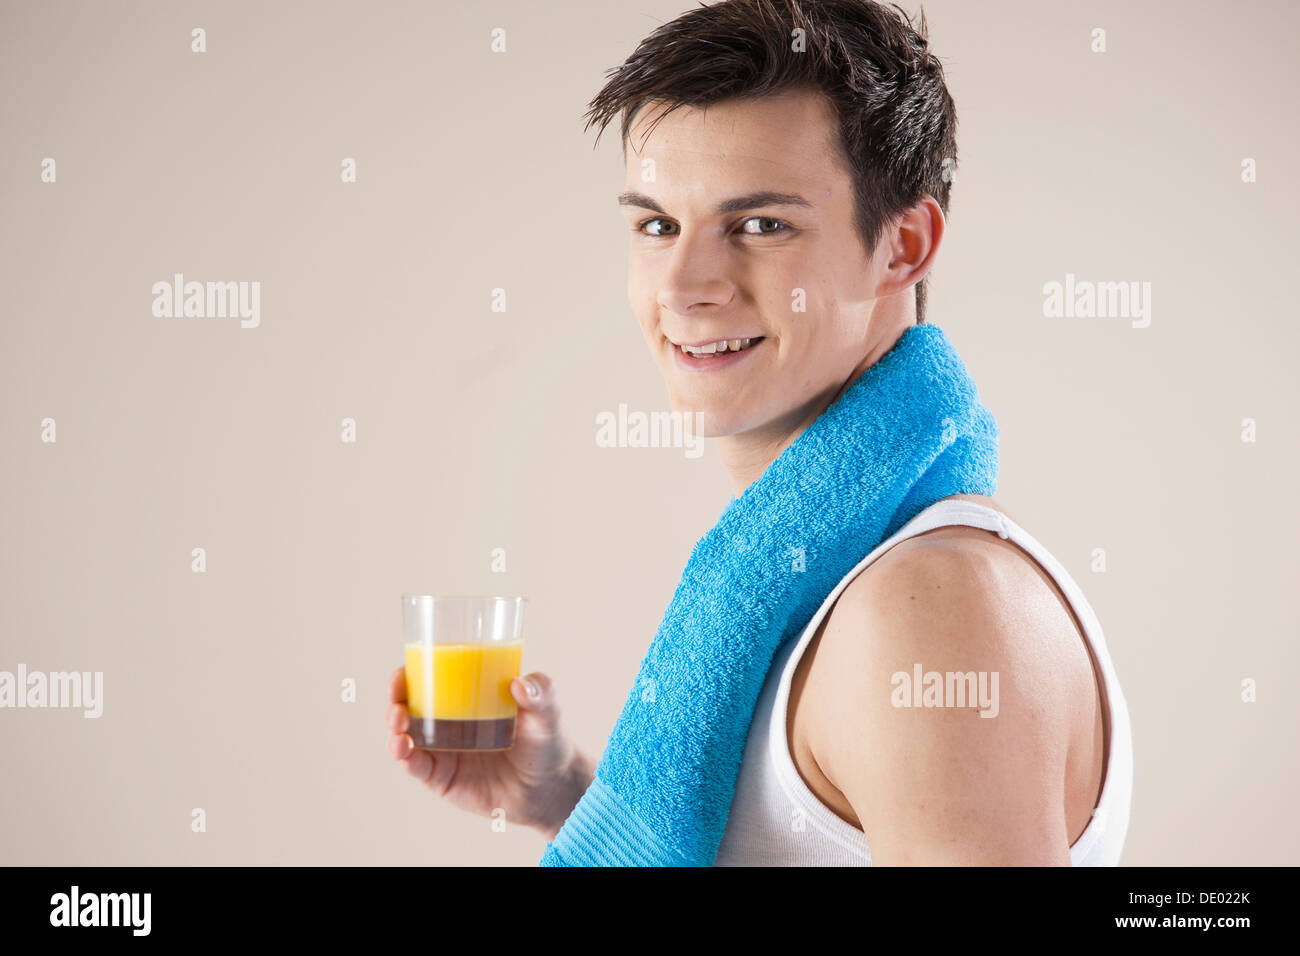 Lächelnder junge Mann nach dem Sport mit einem Glas Saft in der hand Stockfoto